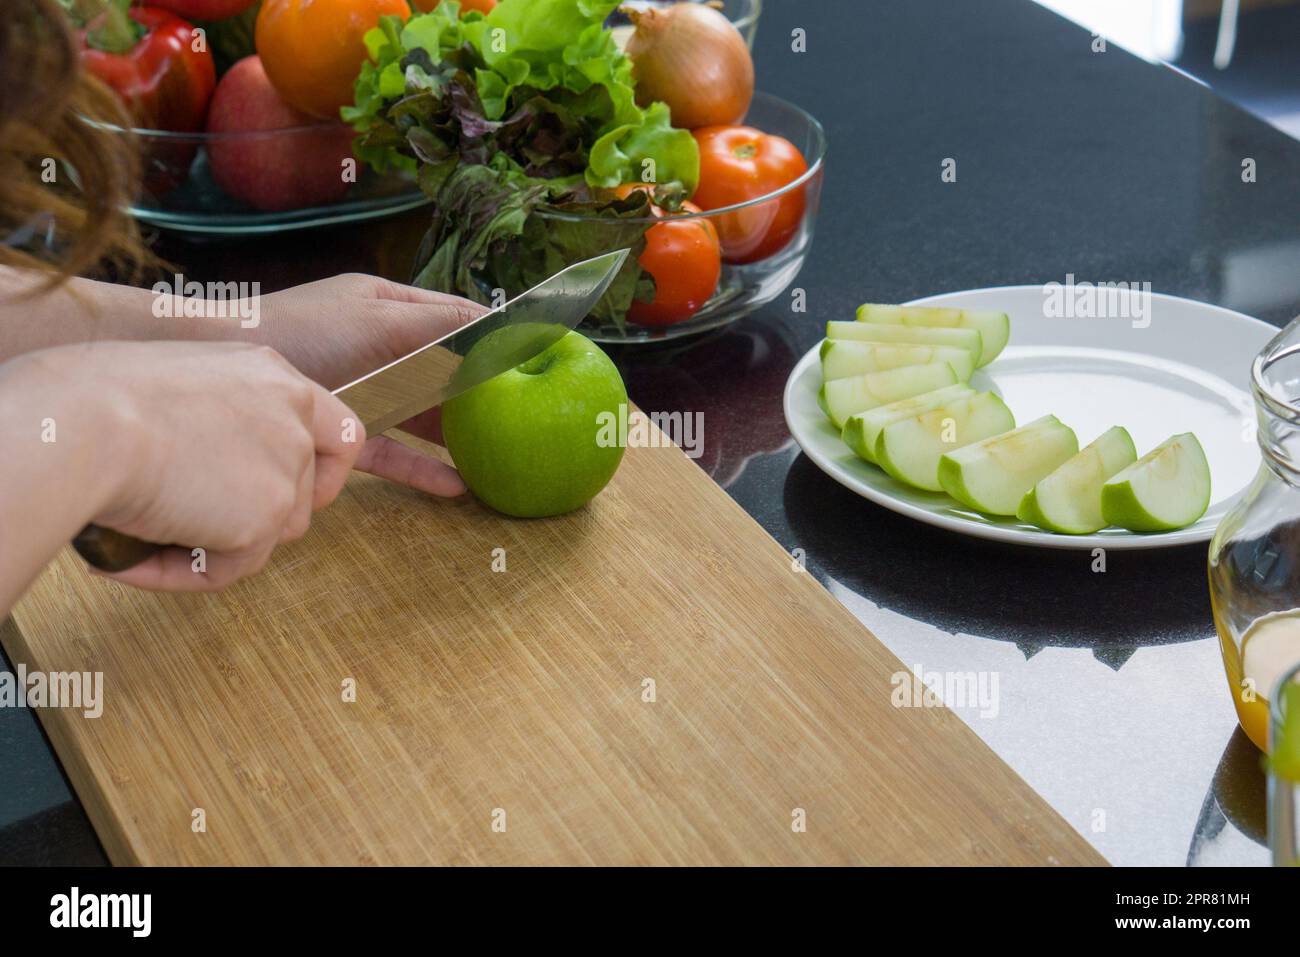 https://c8.alamy.com/compit/2pr81mh/chiudi-la-mano-tenendo-il-coltello-che-taglia-la-mela-verde-su-un-tagliere-di-legno-la-frutta-a-fette-viene-posta-su-un-piatto-una-ciotola-di-vetro-con-una-varieta-di-frutta-e-verdura-e-posizionata-sul-bancone-della-cucina-2pr81mh.jpg